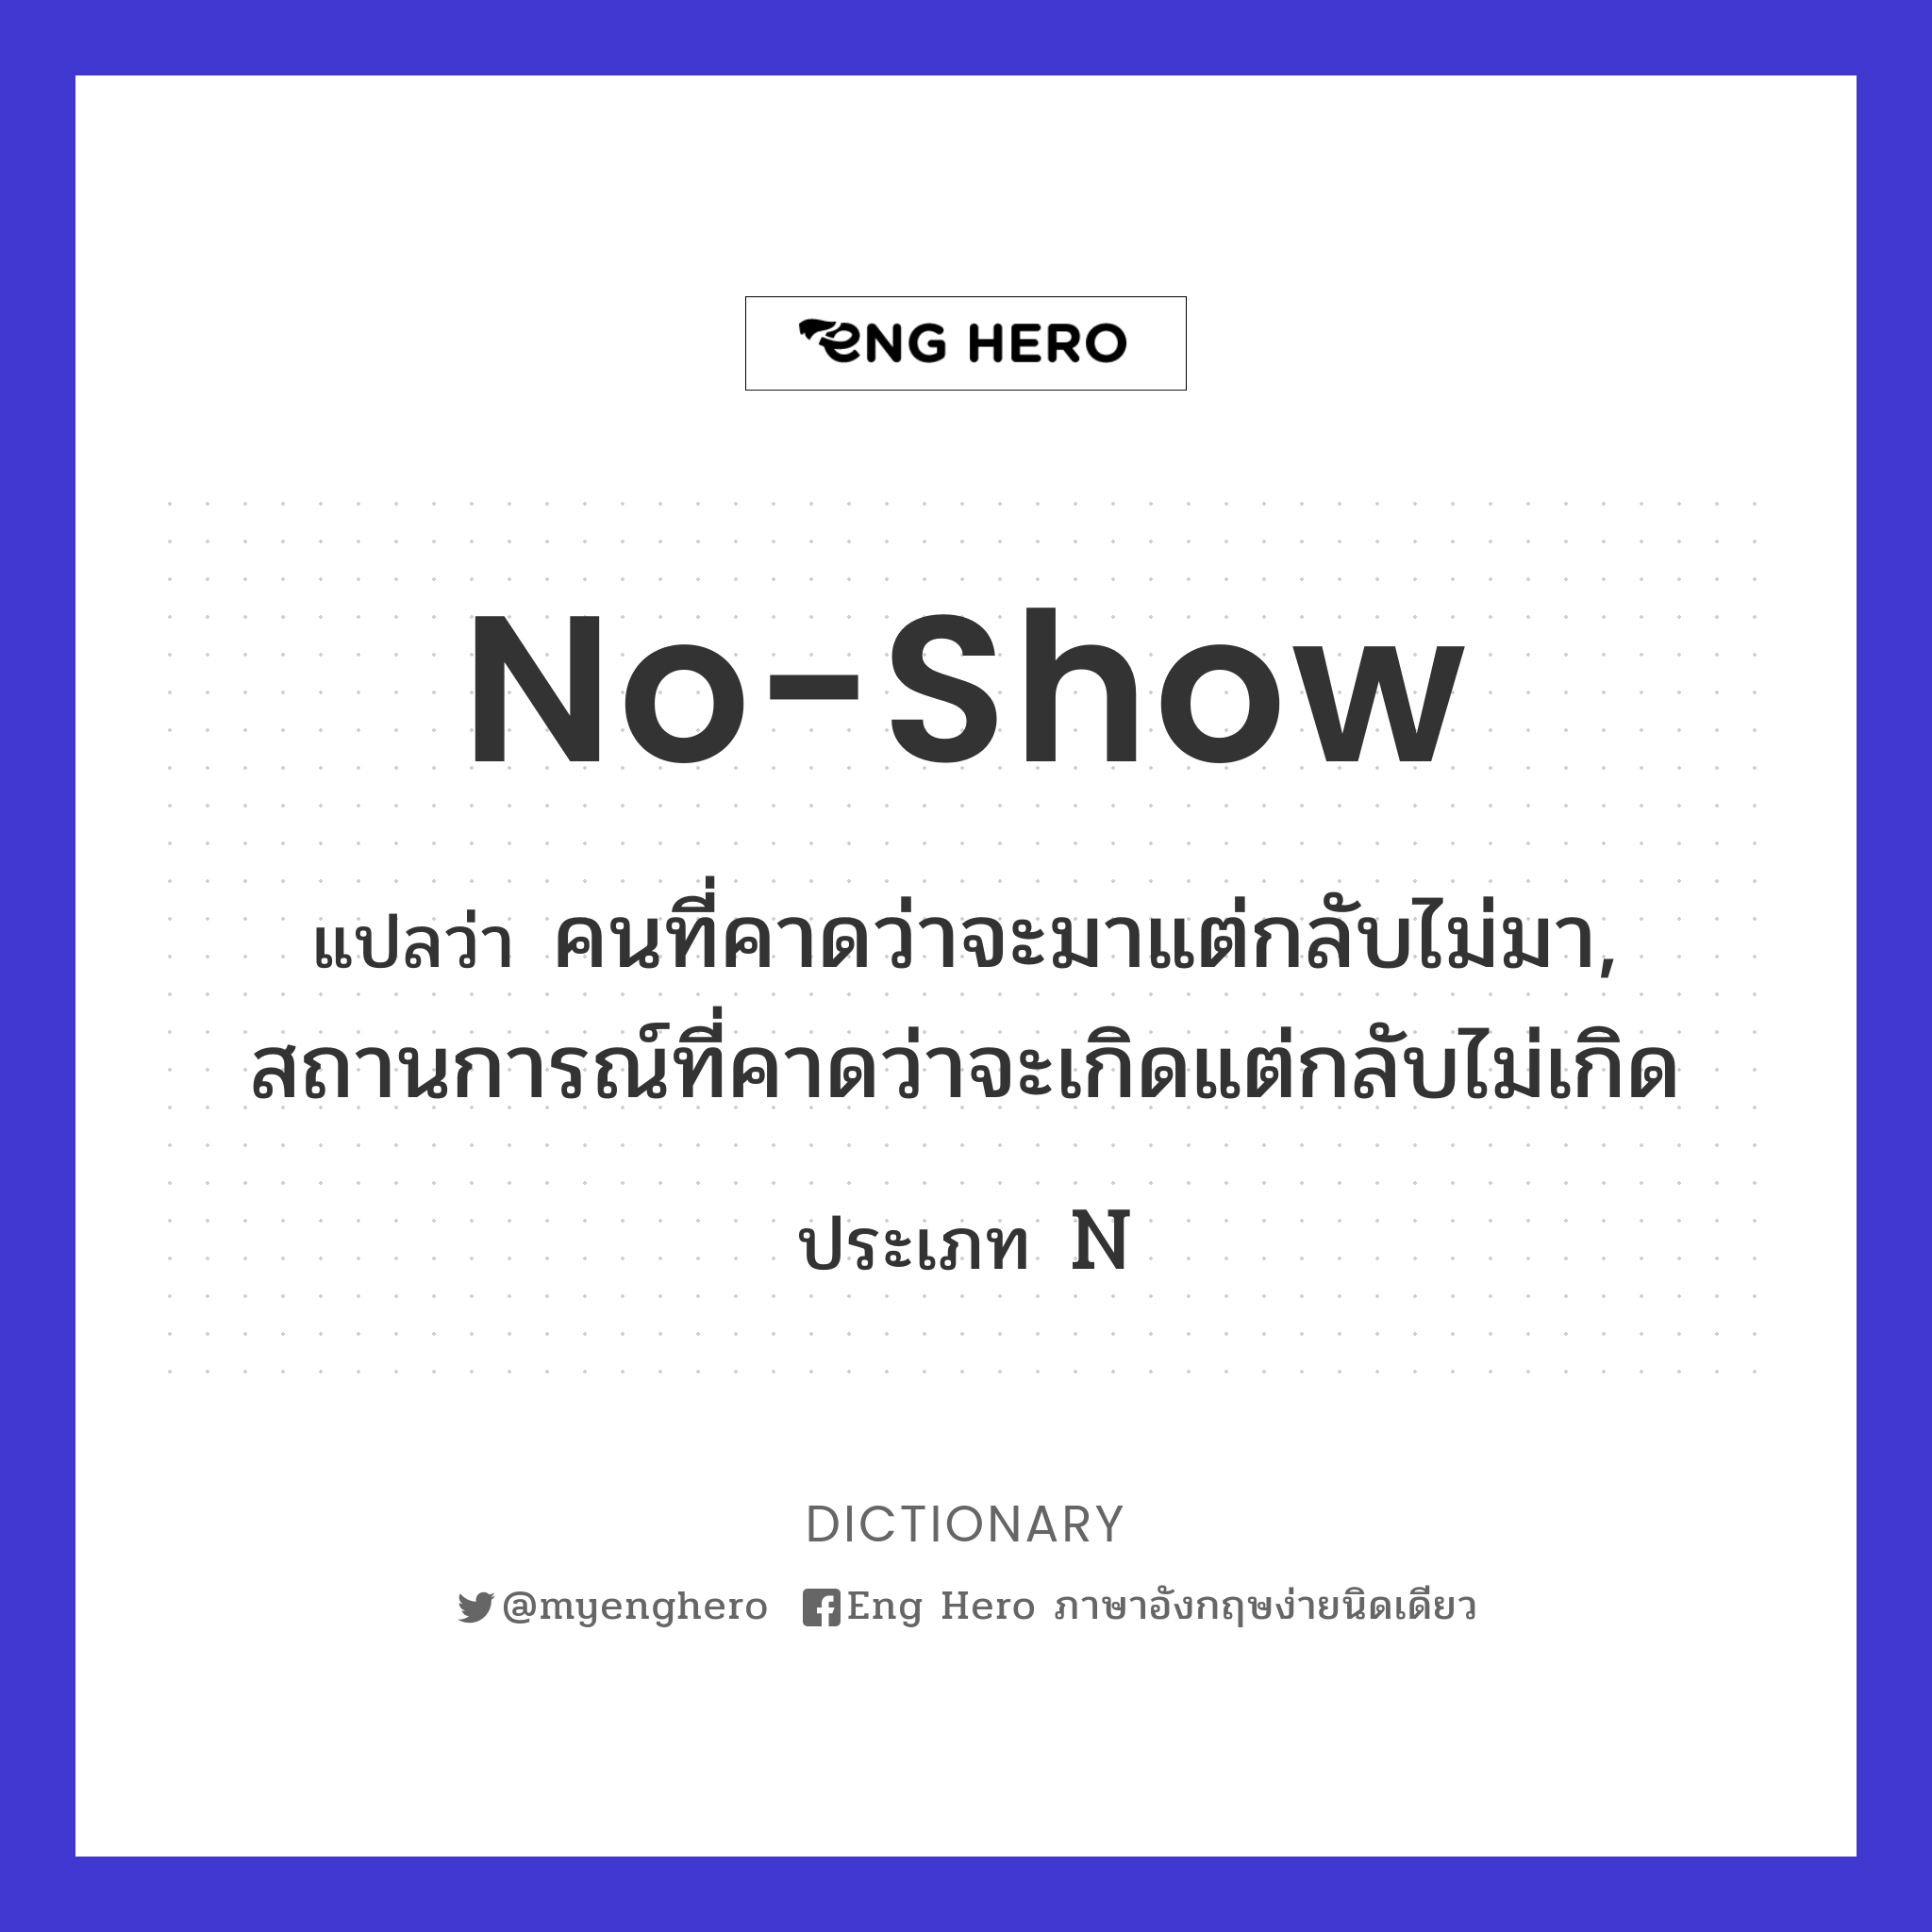 no-show